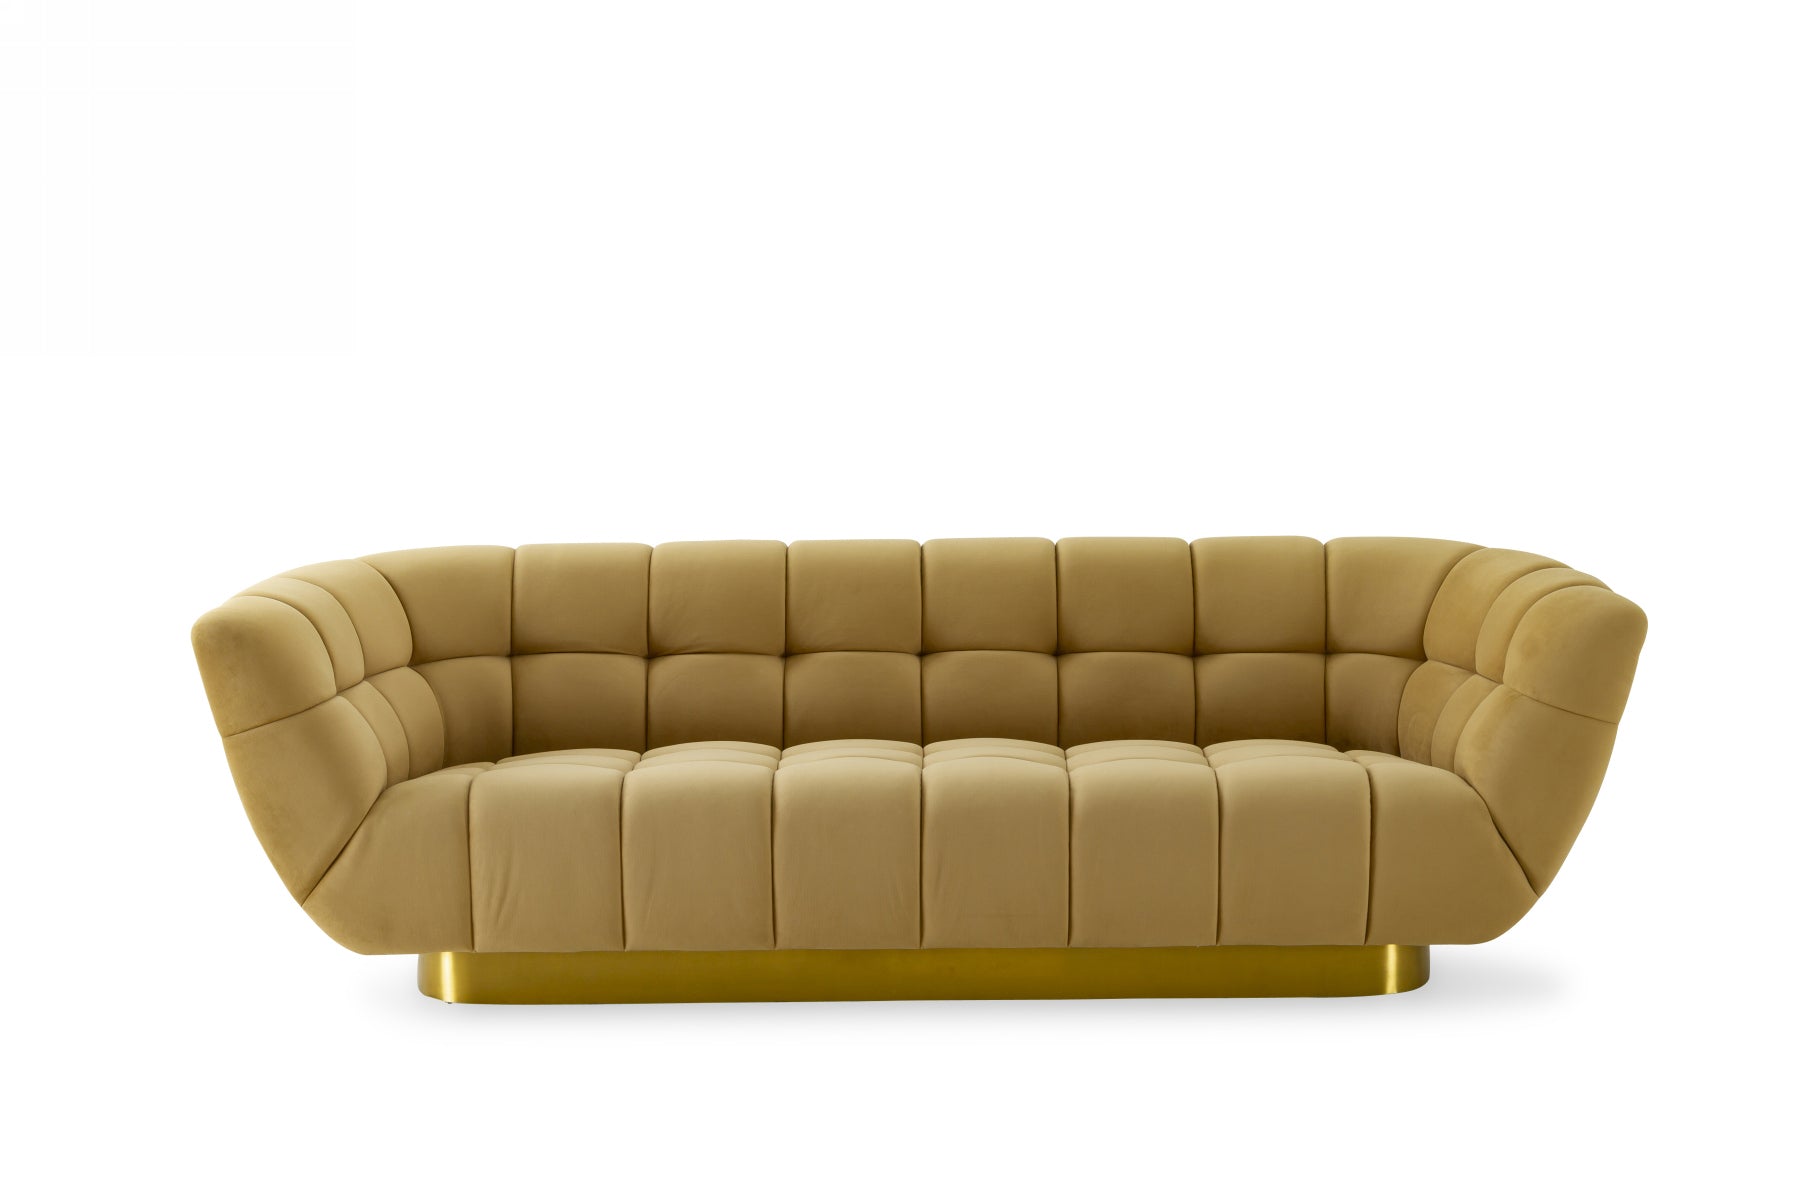 Divani Casa Granby - Glam Mustard and Gold Fabric Sofa-Sofa-VIG-Wall2Wall Furnishings